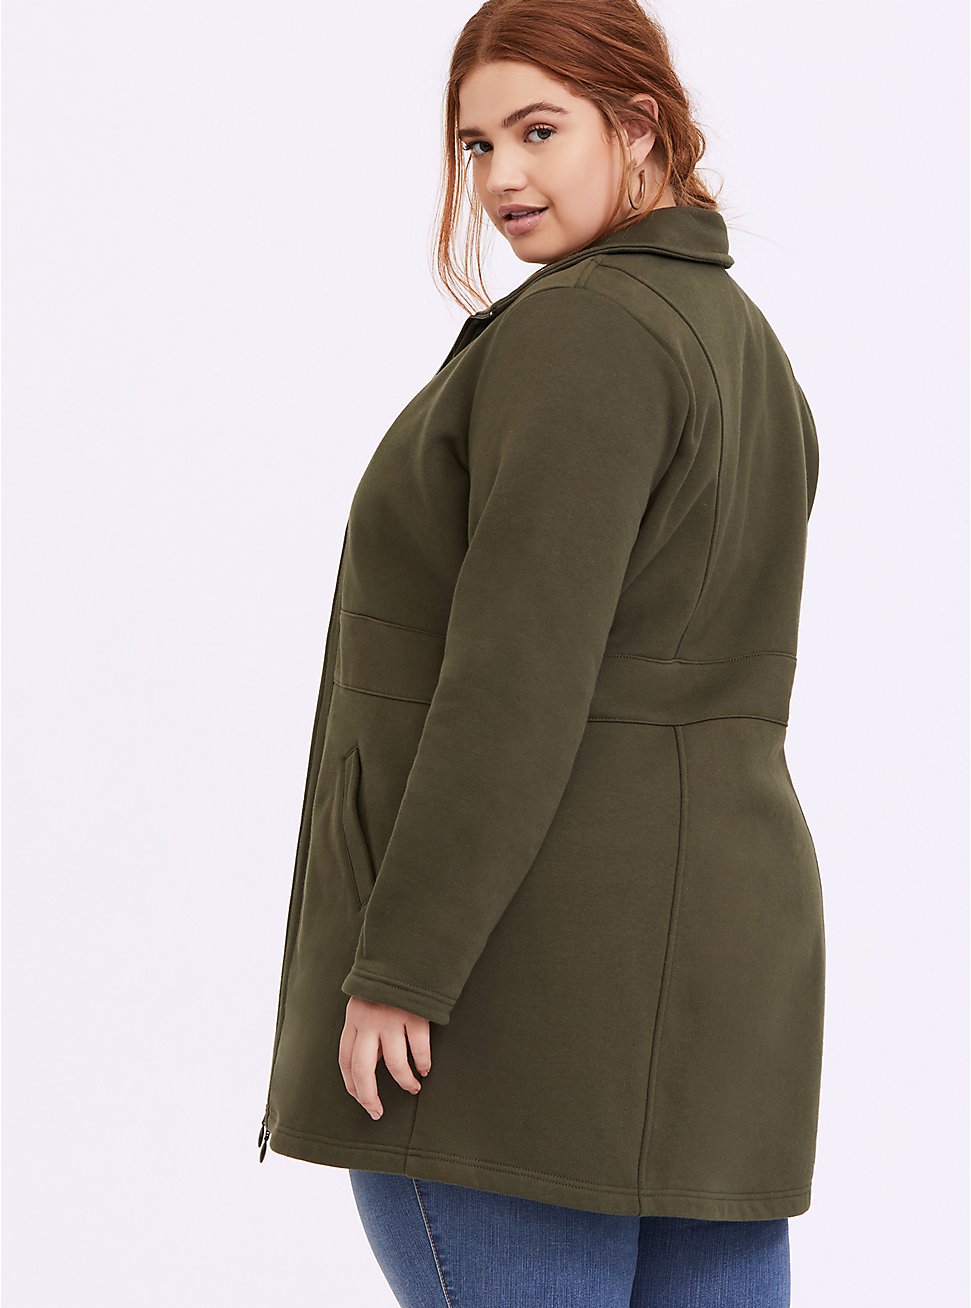 Plus Size - Olive Green Fleece Dual Zip Jacket - Torrid